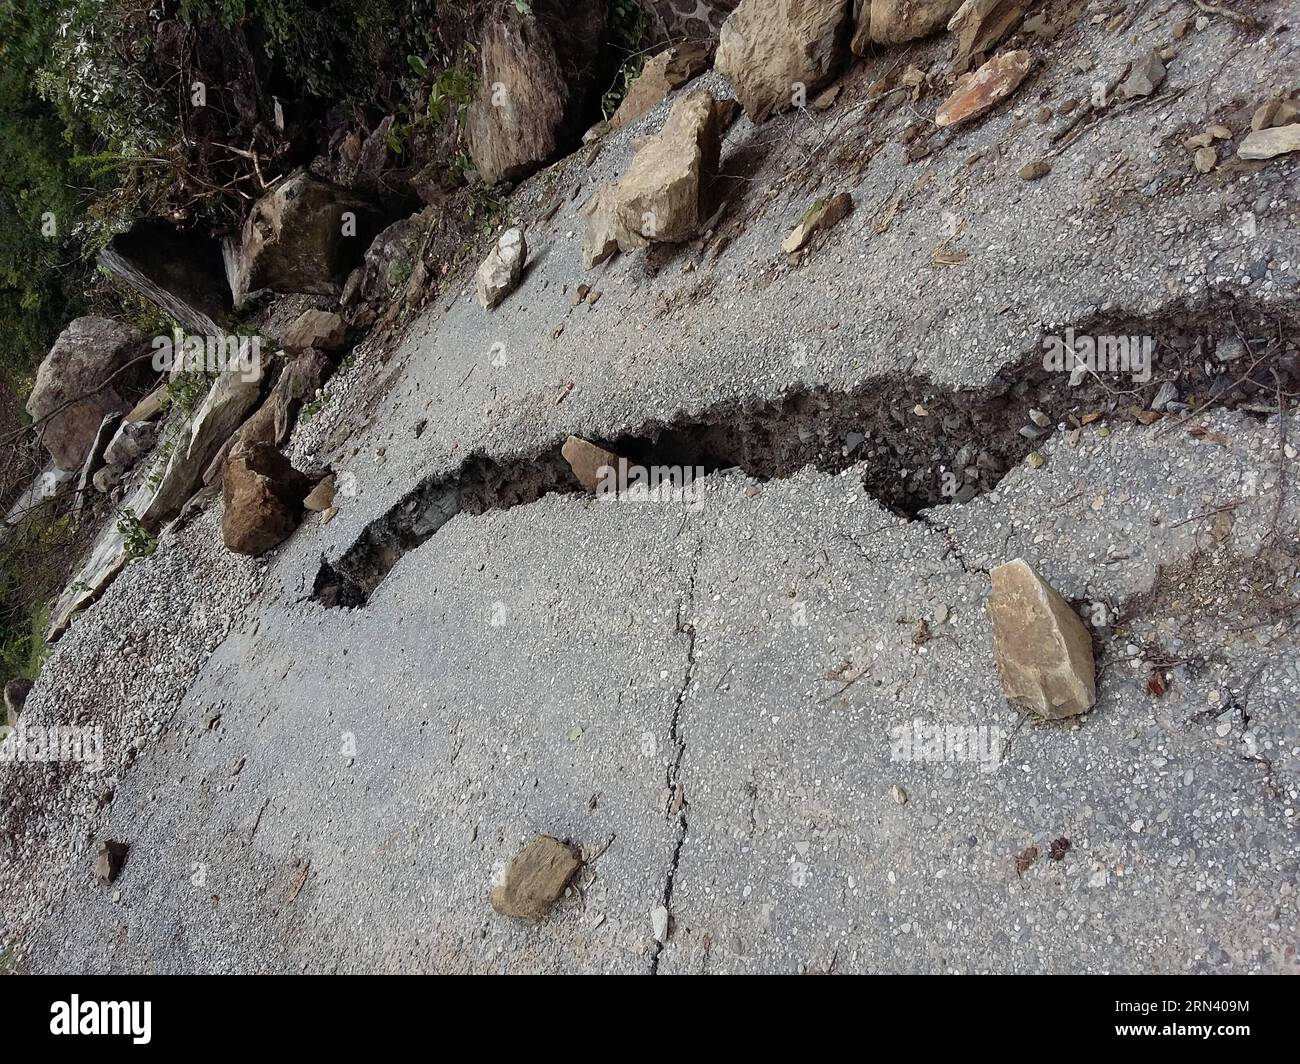 (150501) -- RASUWA, 1. Mai 2015 -- Foto vom 1. Mai 2015 zeigt einen Riss auf einer Autobahn in Rasuwa, Nepal. Die Zahl der Todesopfer durch ein starkes Erdbeben in Nepal stieg auf 6.204 und insgesamt wurden 13.932 weitere verletzt, sagte das Innenministerium am Freitag. NEPAL-RASUWA-ERDBEBEN-NACHWIRKUNGEN SunilxSharma PUBLICATIONxNOTxINxCHN 1. Mai 2015 Foto aufgenommen AM 1. Mai 2015 zeigt einen Riss auf einer Autobahn in Nepal die Todeszahlen eines starken Erdbebens in Nepal stiegen auf 6 204 und insgesamt 13 932 weitere wurden verletzt das Innenministerium sagte AM Freitag Erdbeben in Nepal Aftermath SunilxSharma PUBLICATIONxNOTx Stockfoto